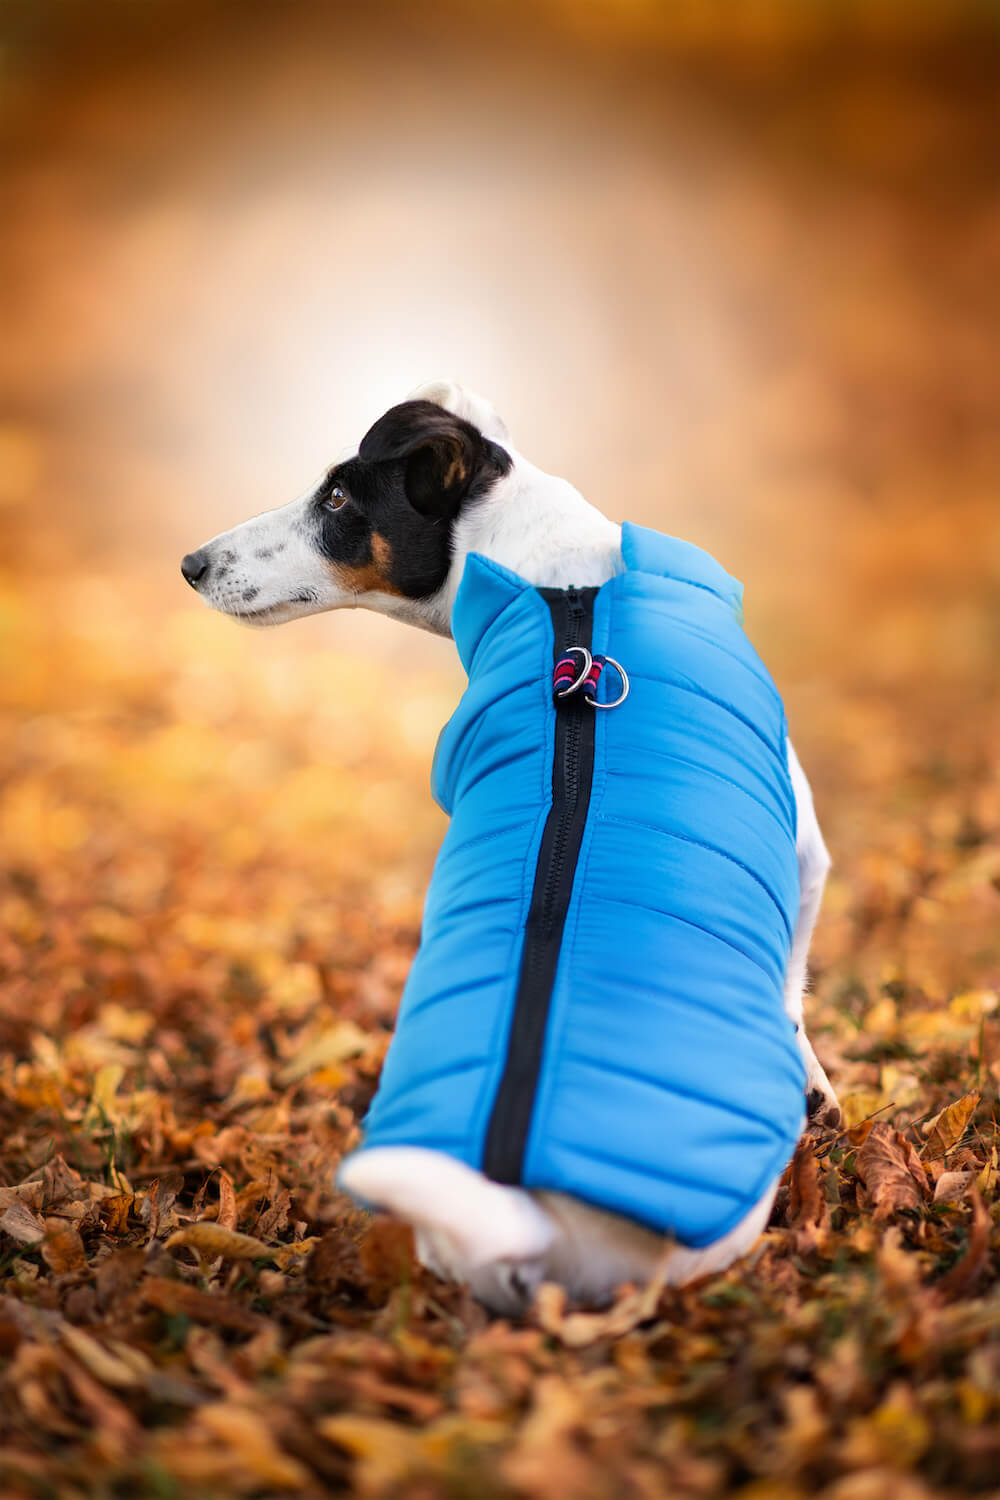 Vsepropejska Color-rainy obleček pro psa na zip Barva: Modrá, Délka zad (cm): 44, Obvod hrudníku: 50 - 54 cm